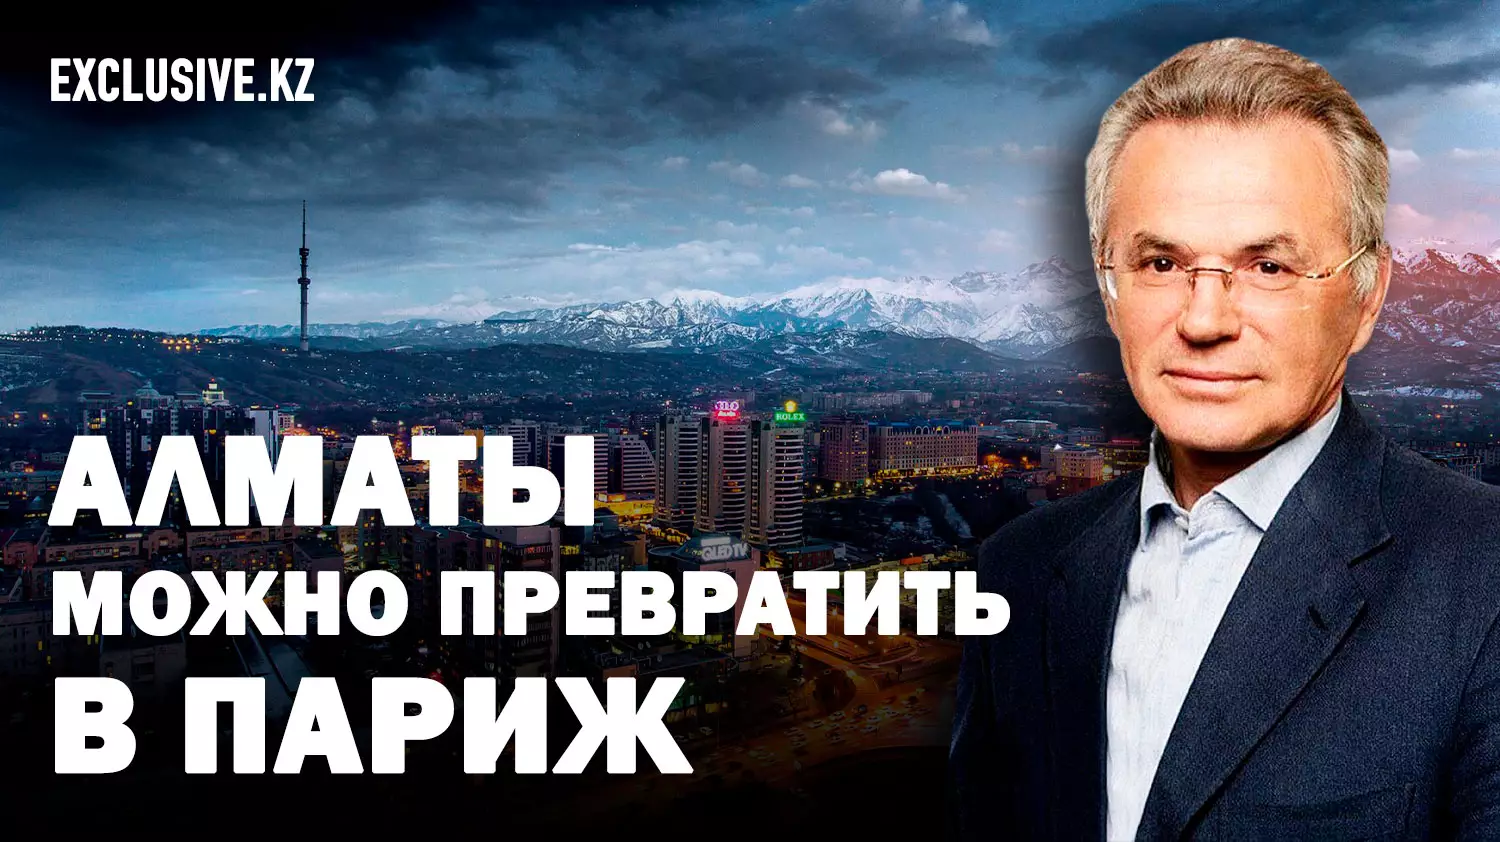 Виктор Храпунов: Казахстану нужна новая столица